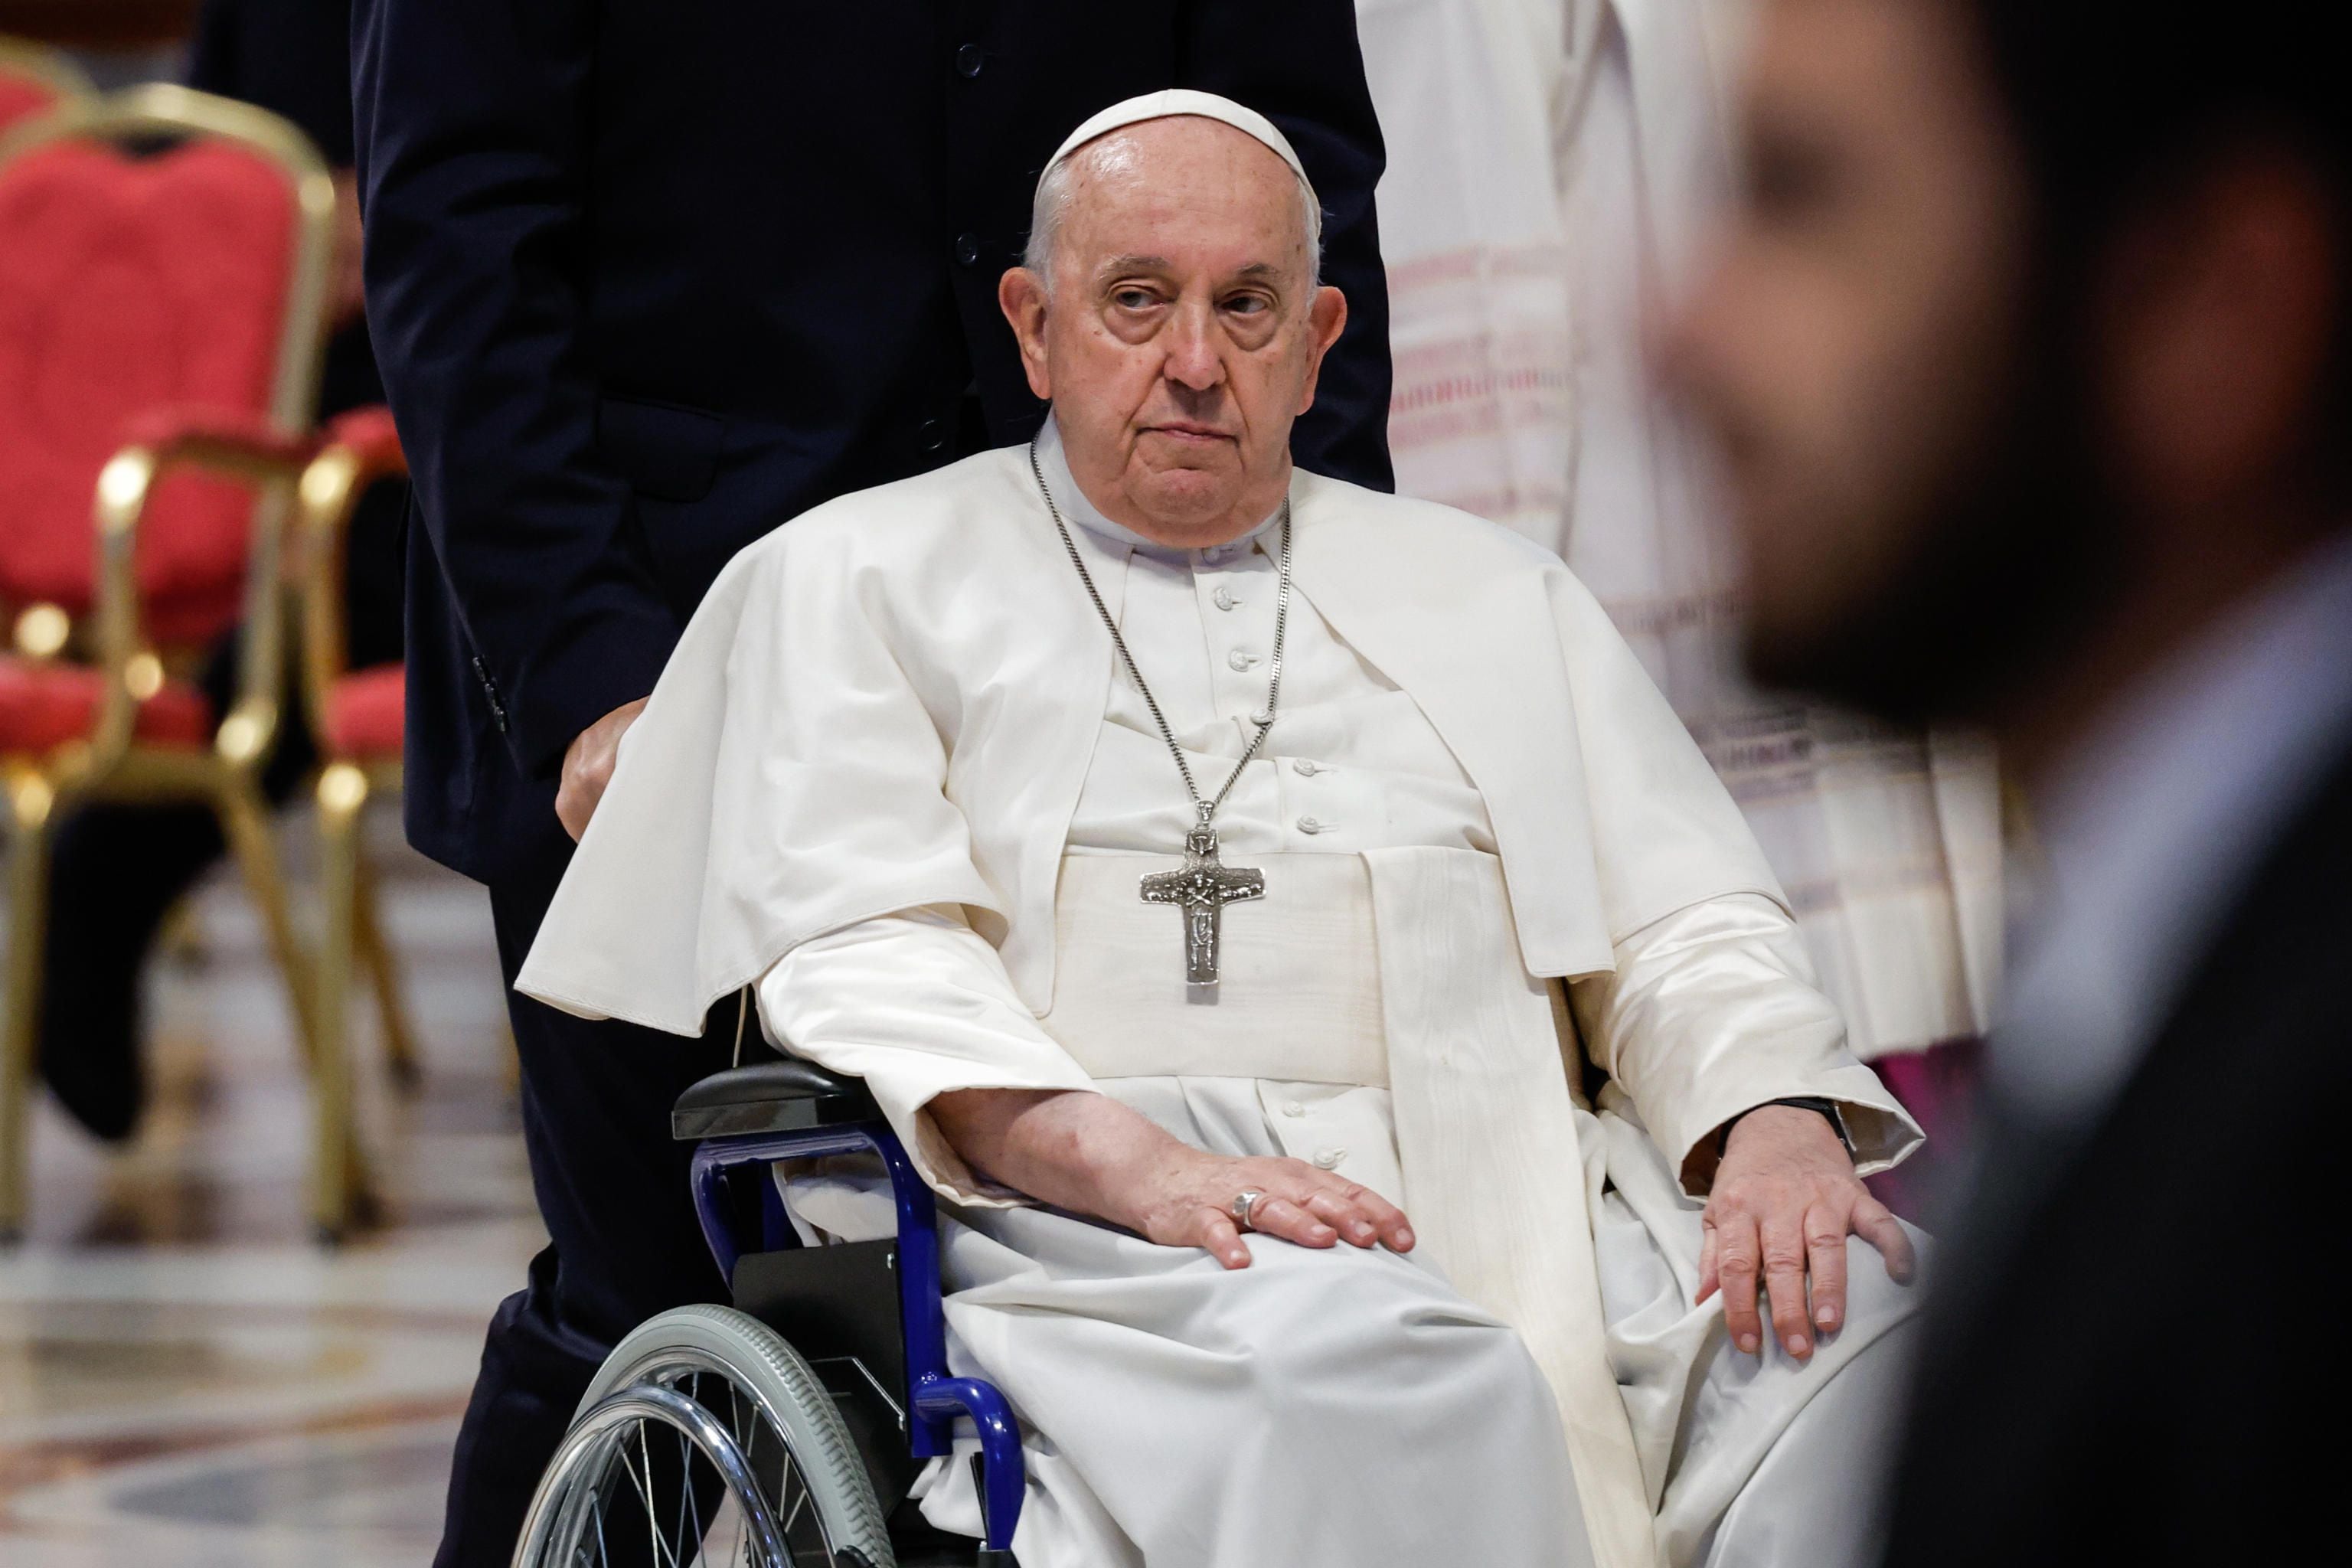 El papa Francisco se disculpó por no poder leer un discurso ante un grupo de rabinos: “No estoy bien de salud”